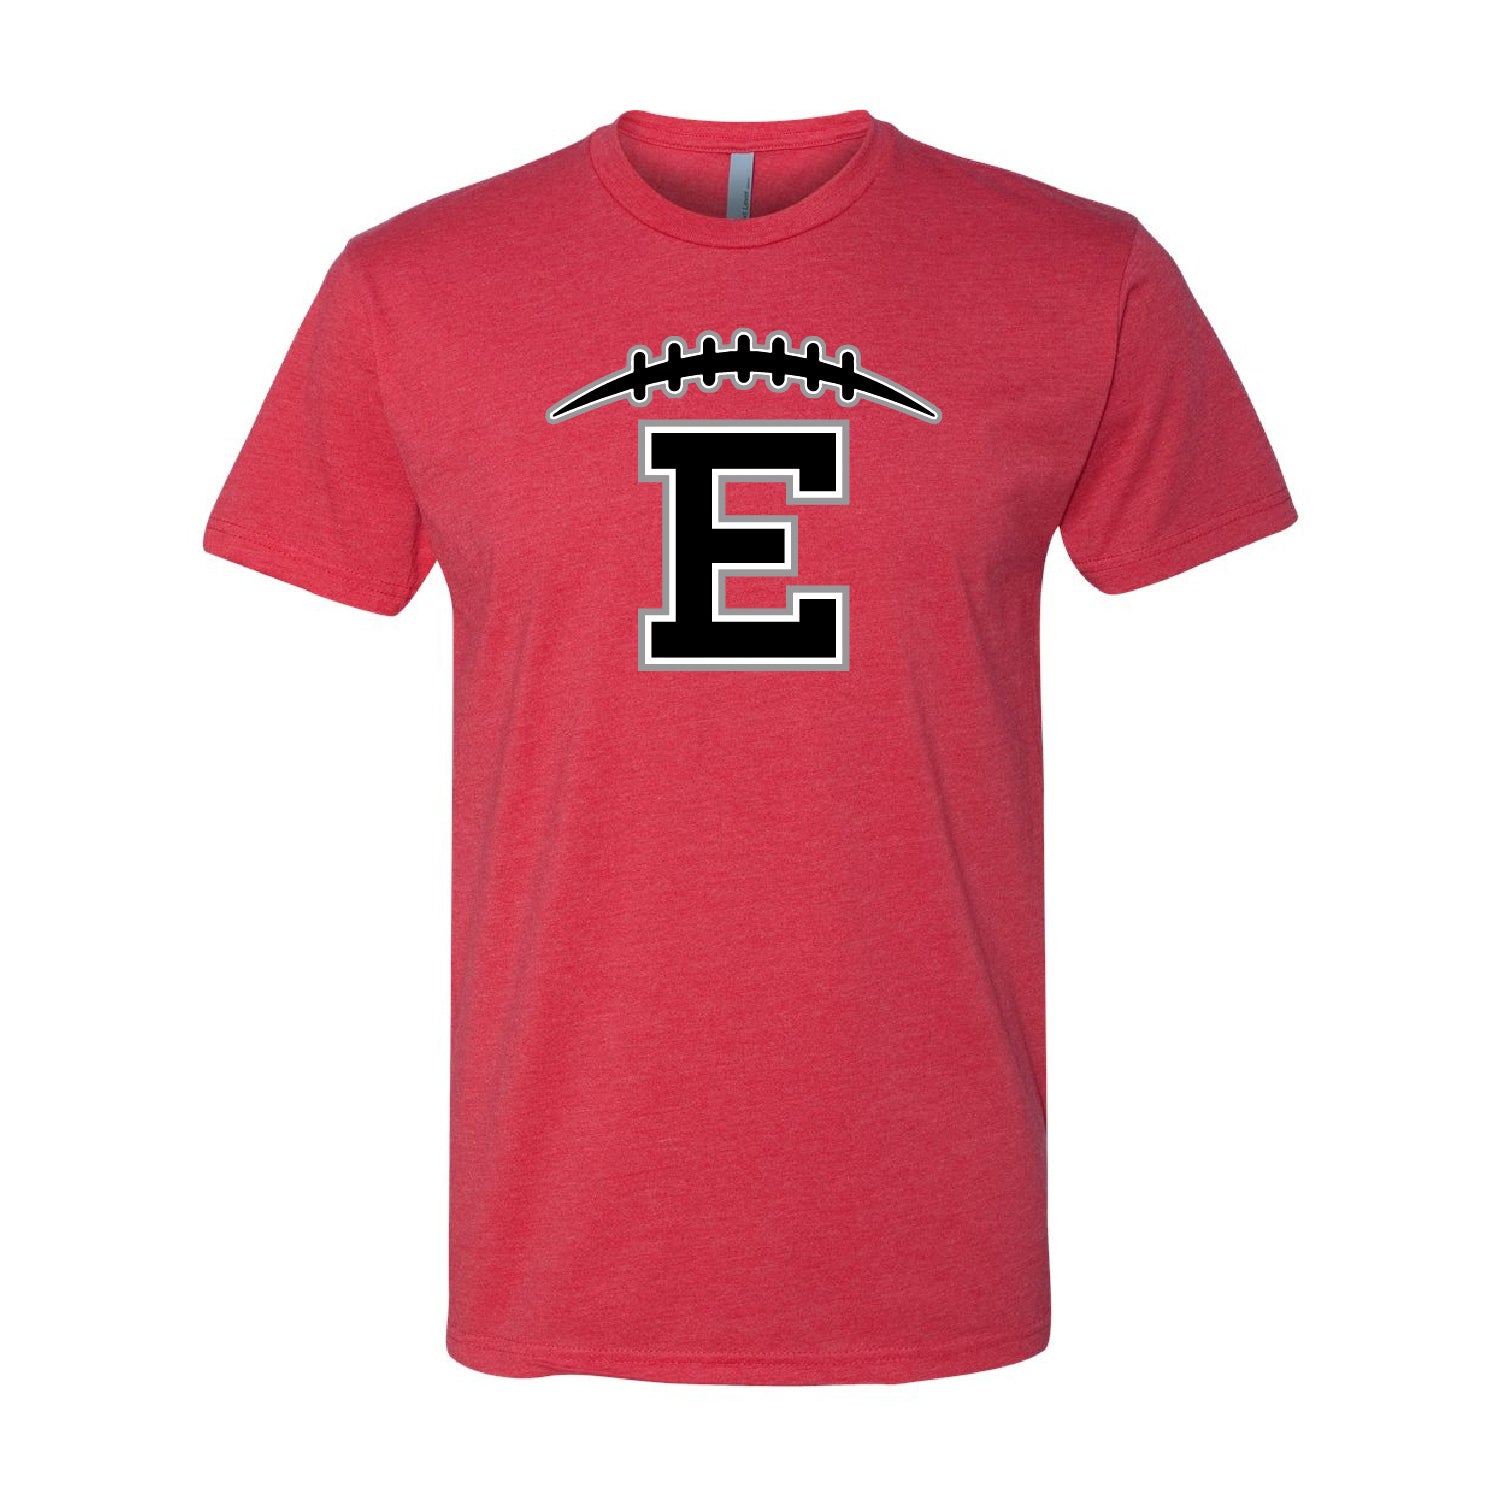 Duluth East Football T-Shirt Design 2